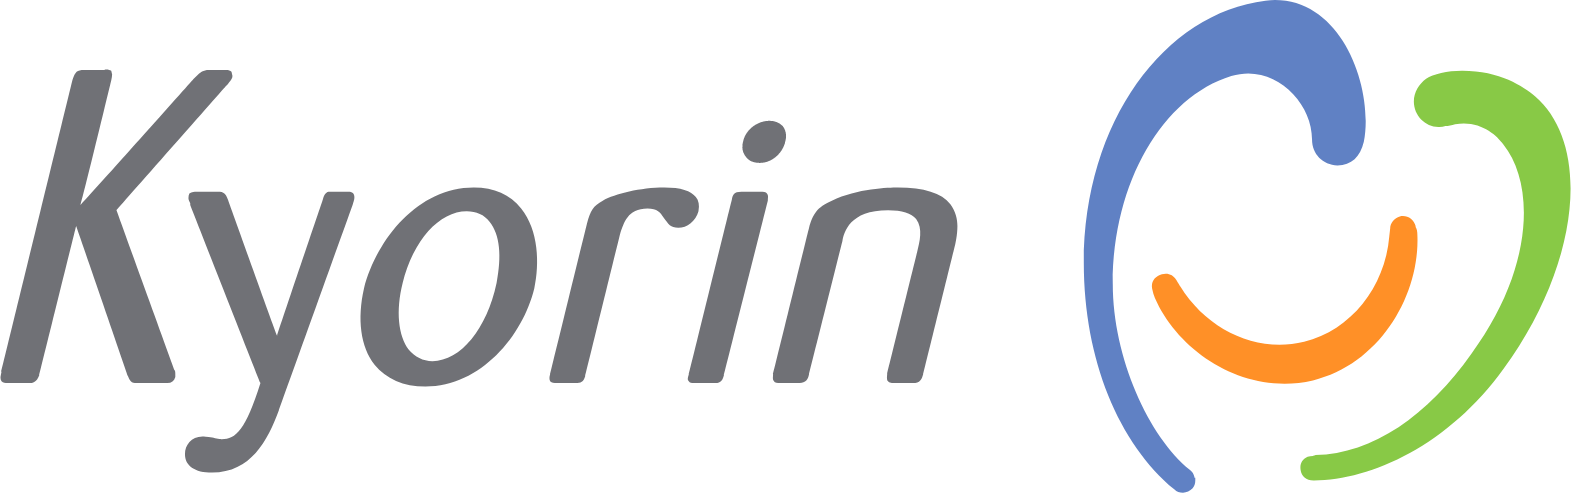 KYORIN Pharmaceutical logo large (transparent PNG)